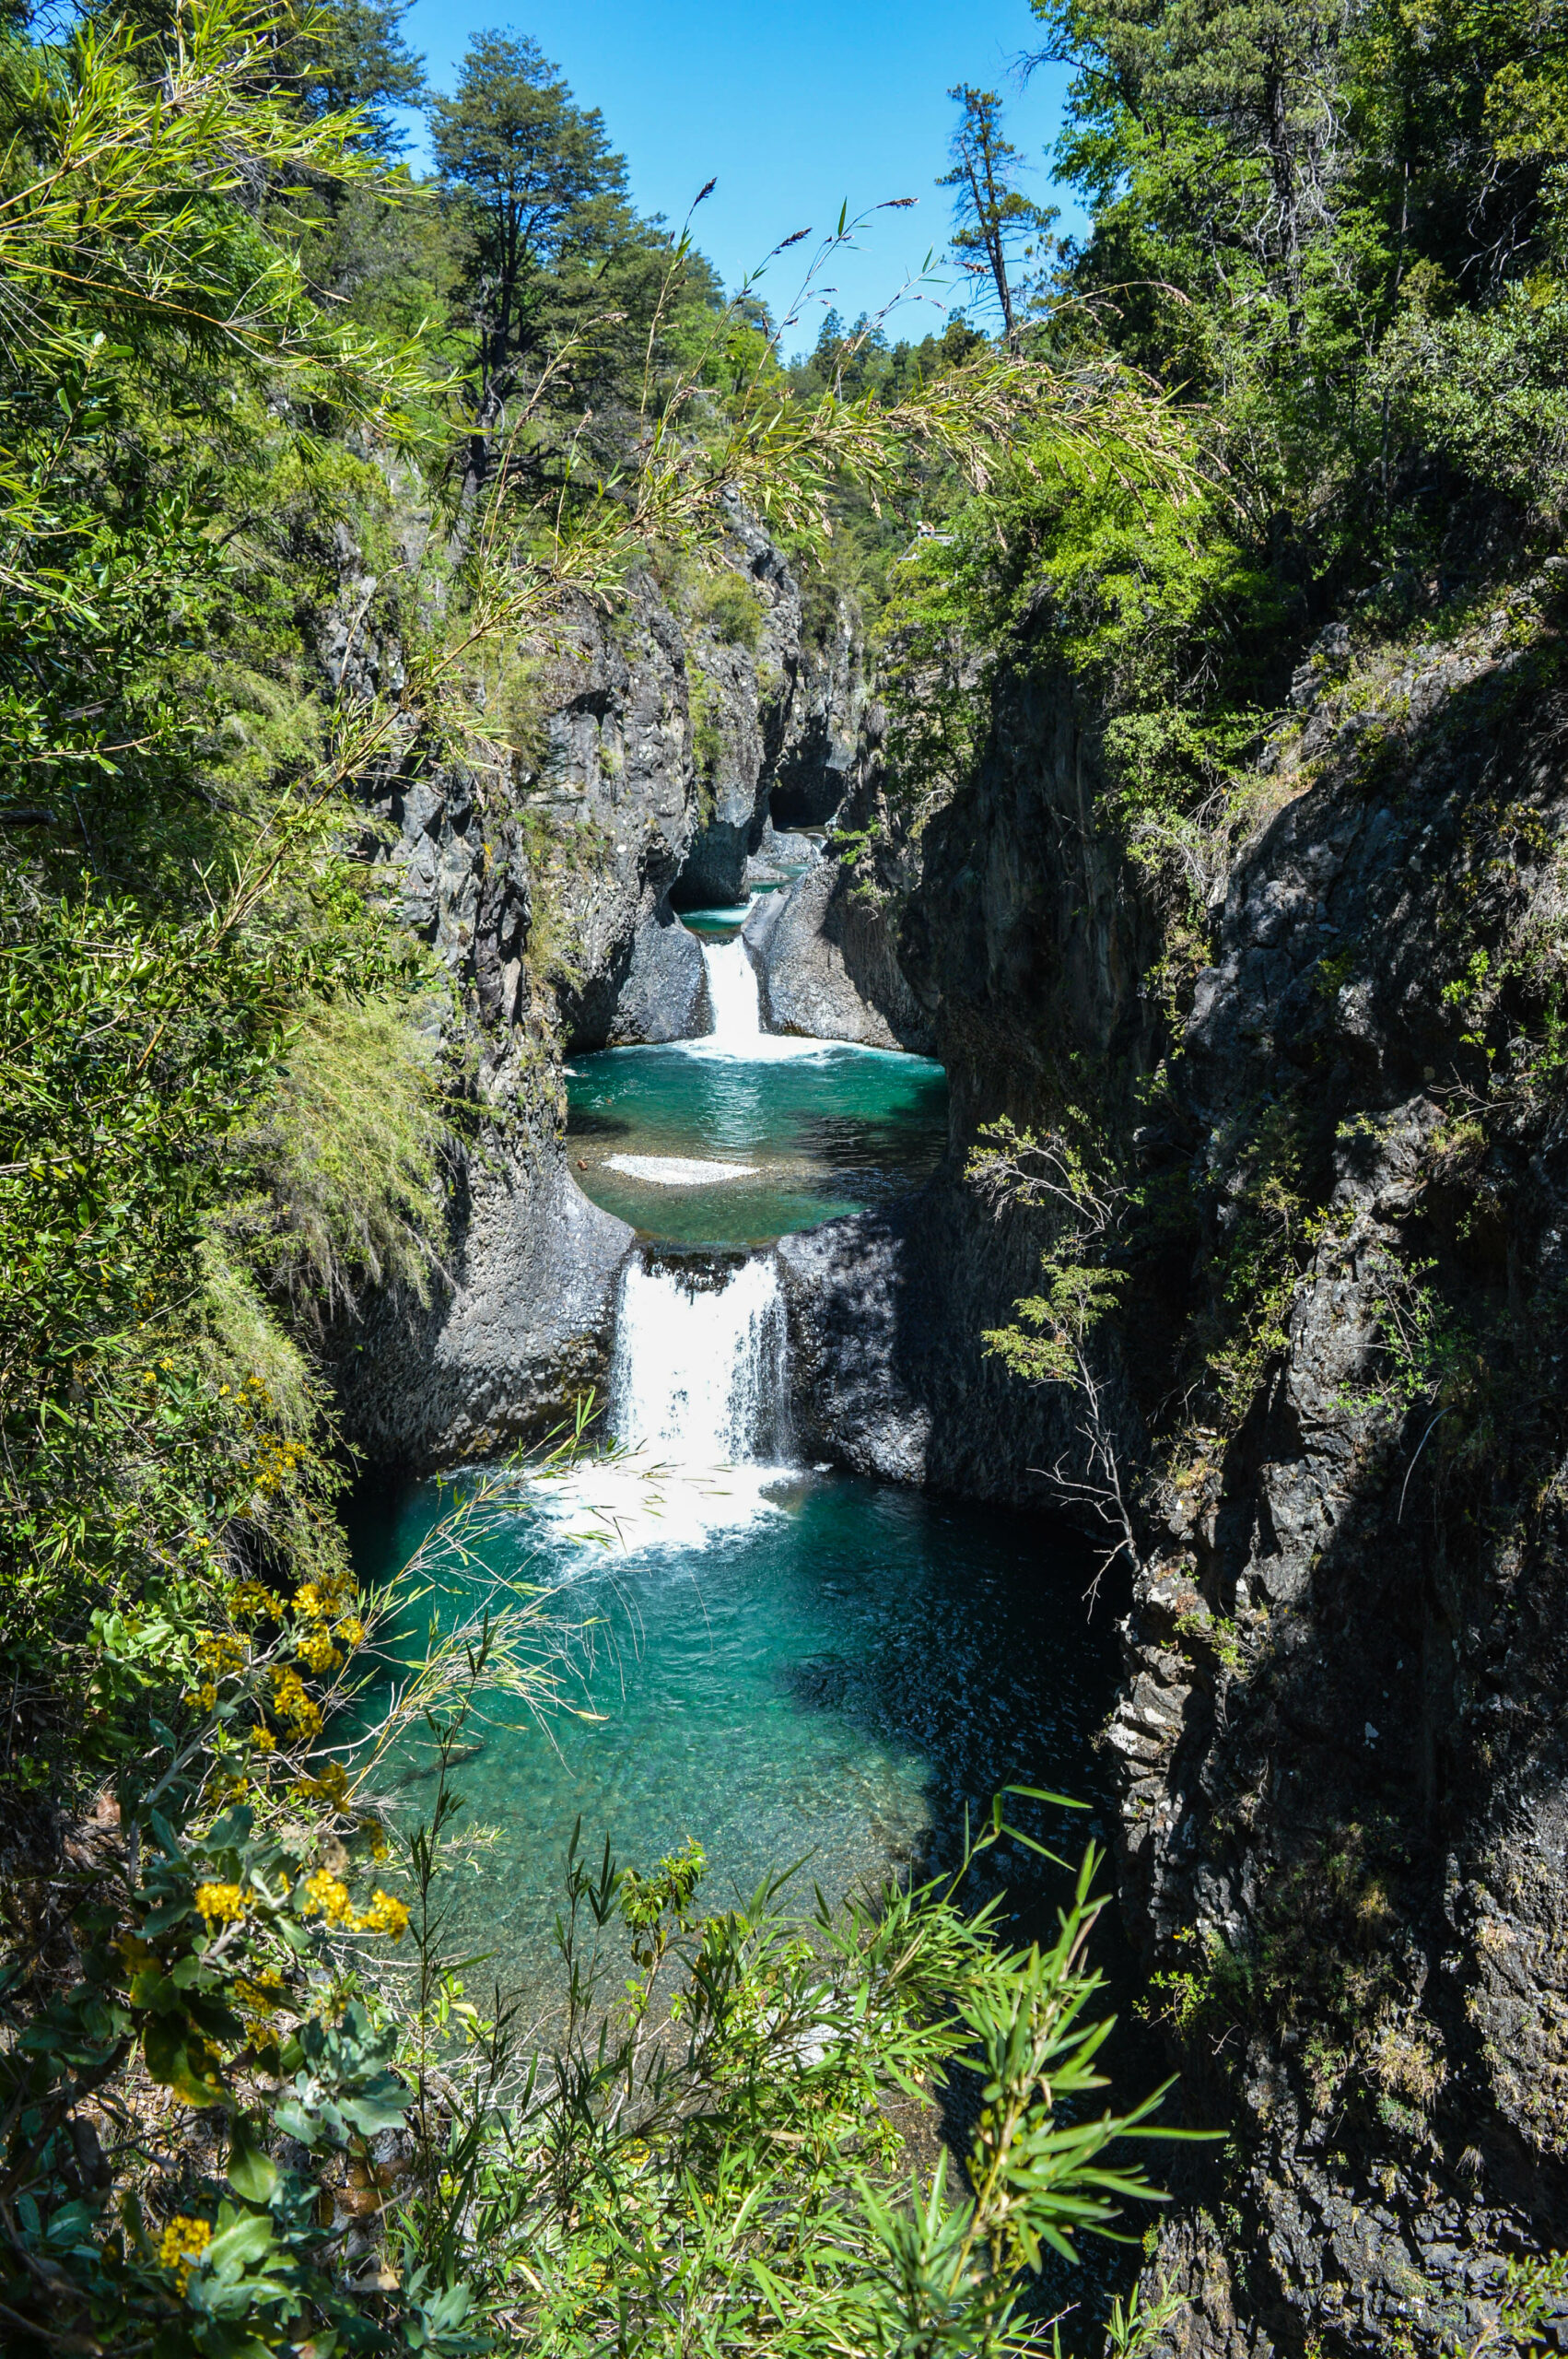 point de vue siete tazas, plusieurs cascades et bassins d'eau turquoise